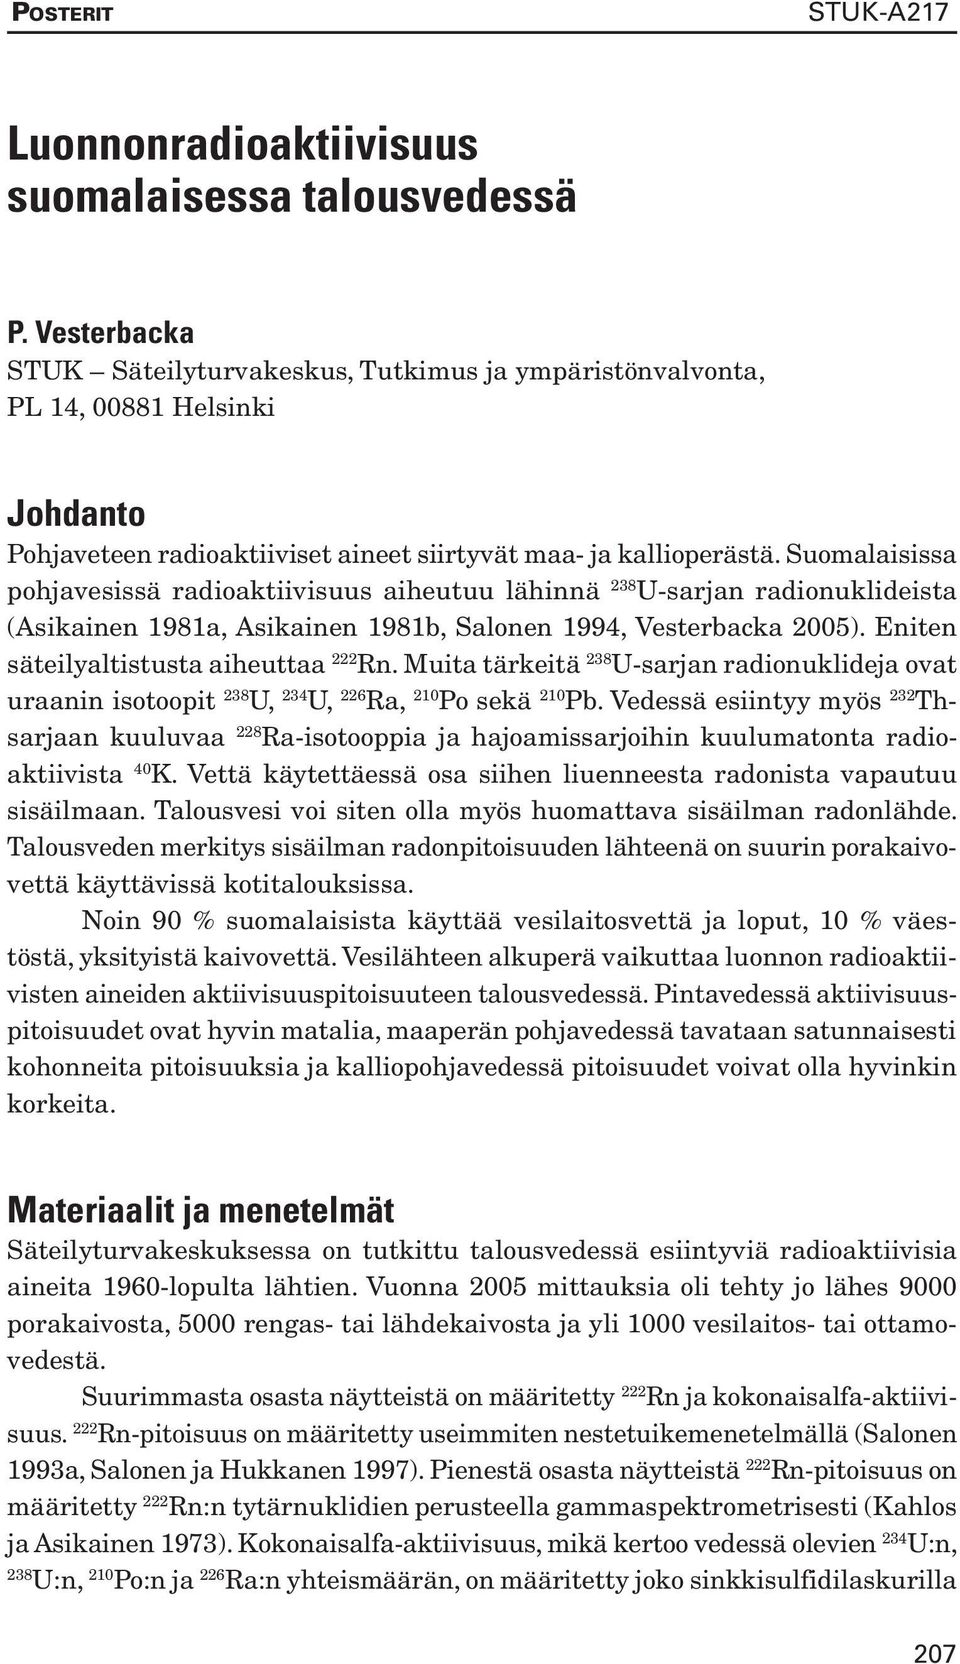 Suomalaisissa pohjavesissä radioaktiivisuus aiheutuu lähinnä 238 U-sarjan radionuklideista (Asikainen 1981a, Asikainen 1981b, Salonen 1994, Vesterbacka 2005).